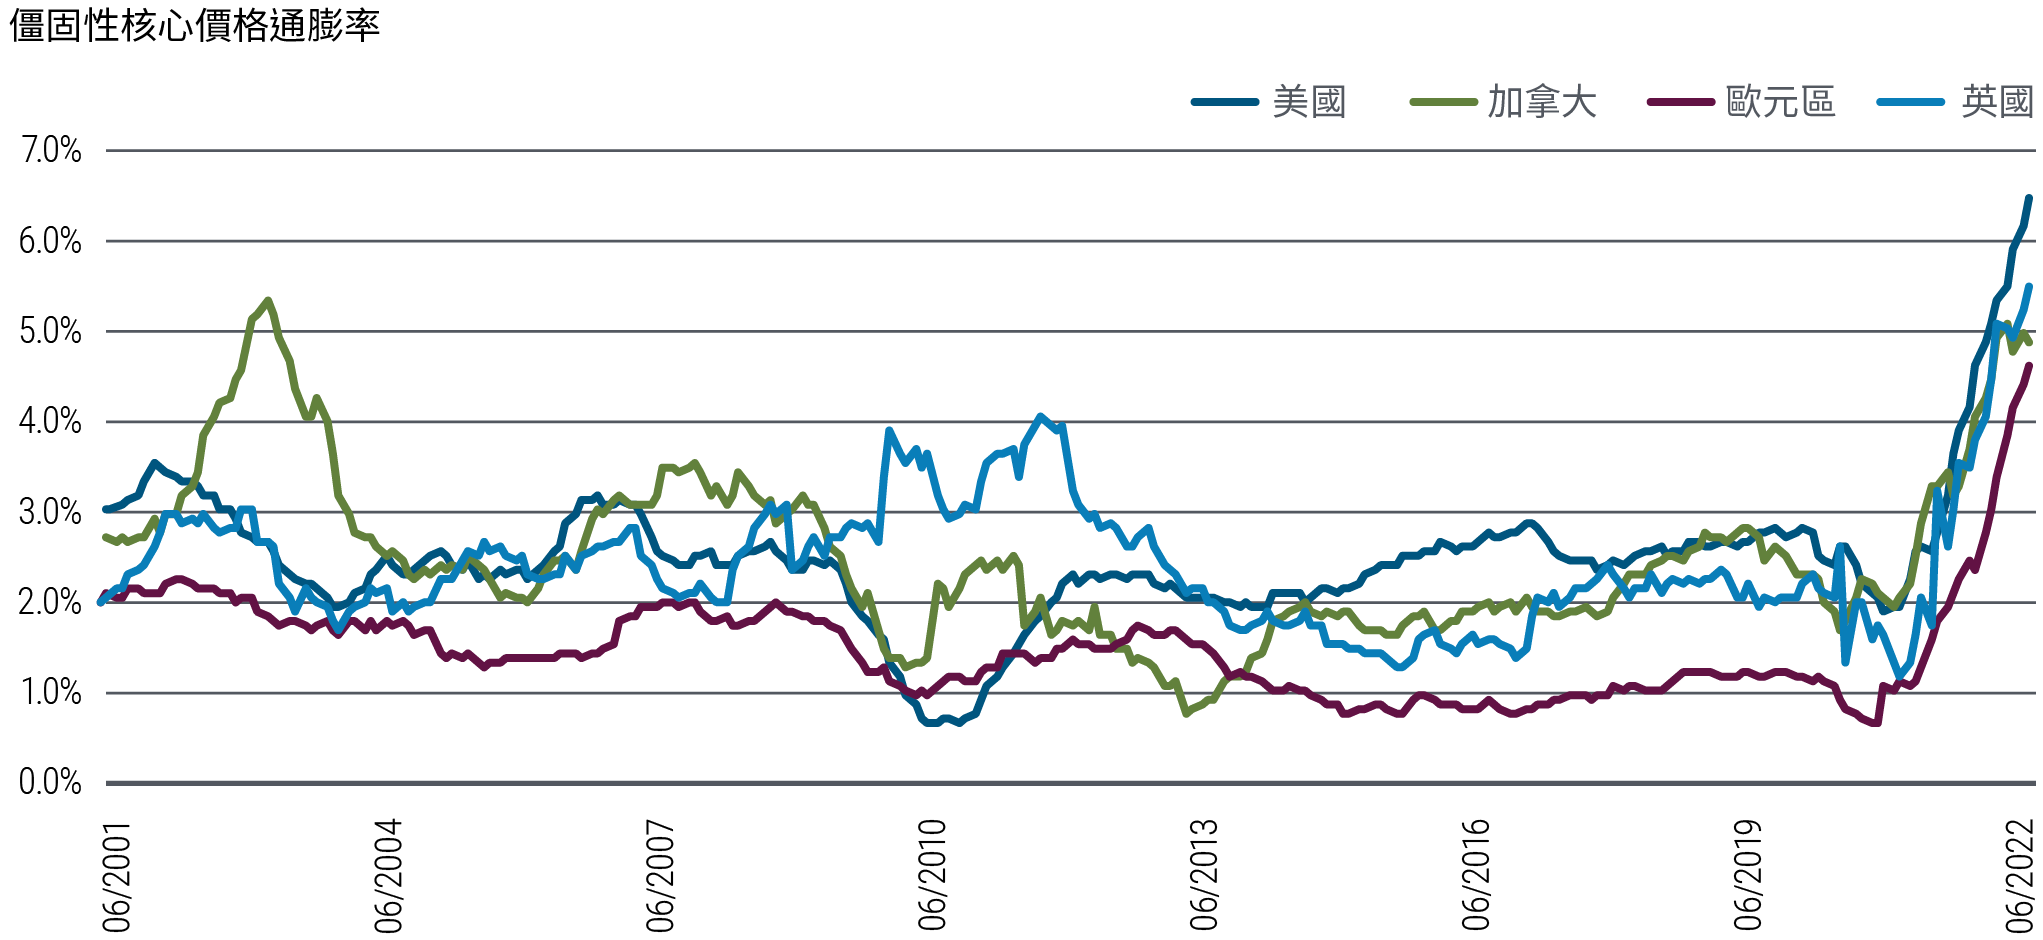 線圖表示自2001年6月至2022年7月期間，美國、加拿大、英國、與歐元區之「價格僵固性」核心物價通膨率的年化數據。「價格僵固性」之定義列於圖表下方。圖表顯示各區域之價格僵固性消費者物價指數均於近期大幅攀升，其中英國於2020年年末率先攀升，其餘國家則於2021年年初接連走揚。2021年年初美國價格僵固性通膨不到2%，然而截至2022年7月31日為止已攀升至6.5%。2020年年末歐元區價格僵固性通膨約為0.7%，然而截至7月底為止已攀升至4.7%。圖表亦顯示年各個區域之價格僵固性通膨近來已向上突破過去20年的常態區間。